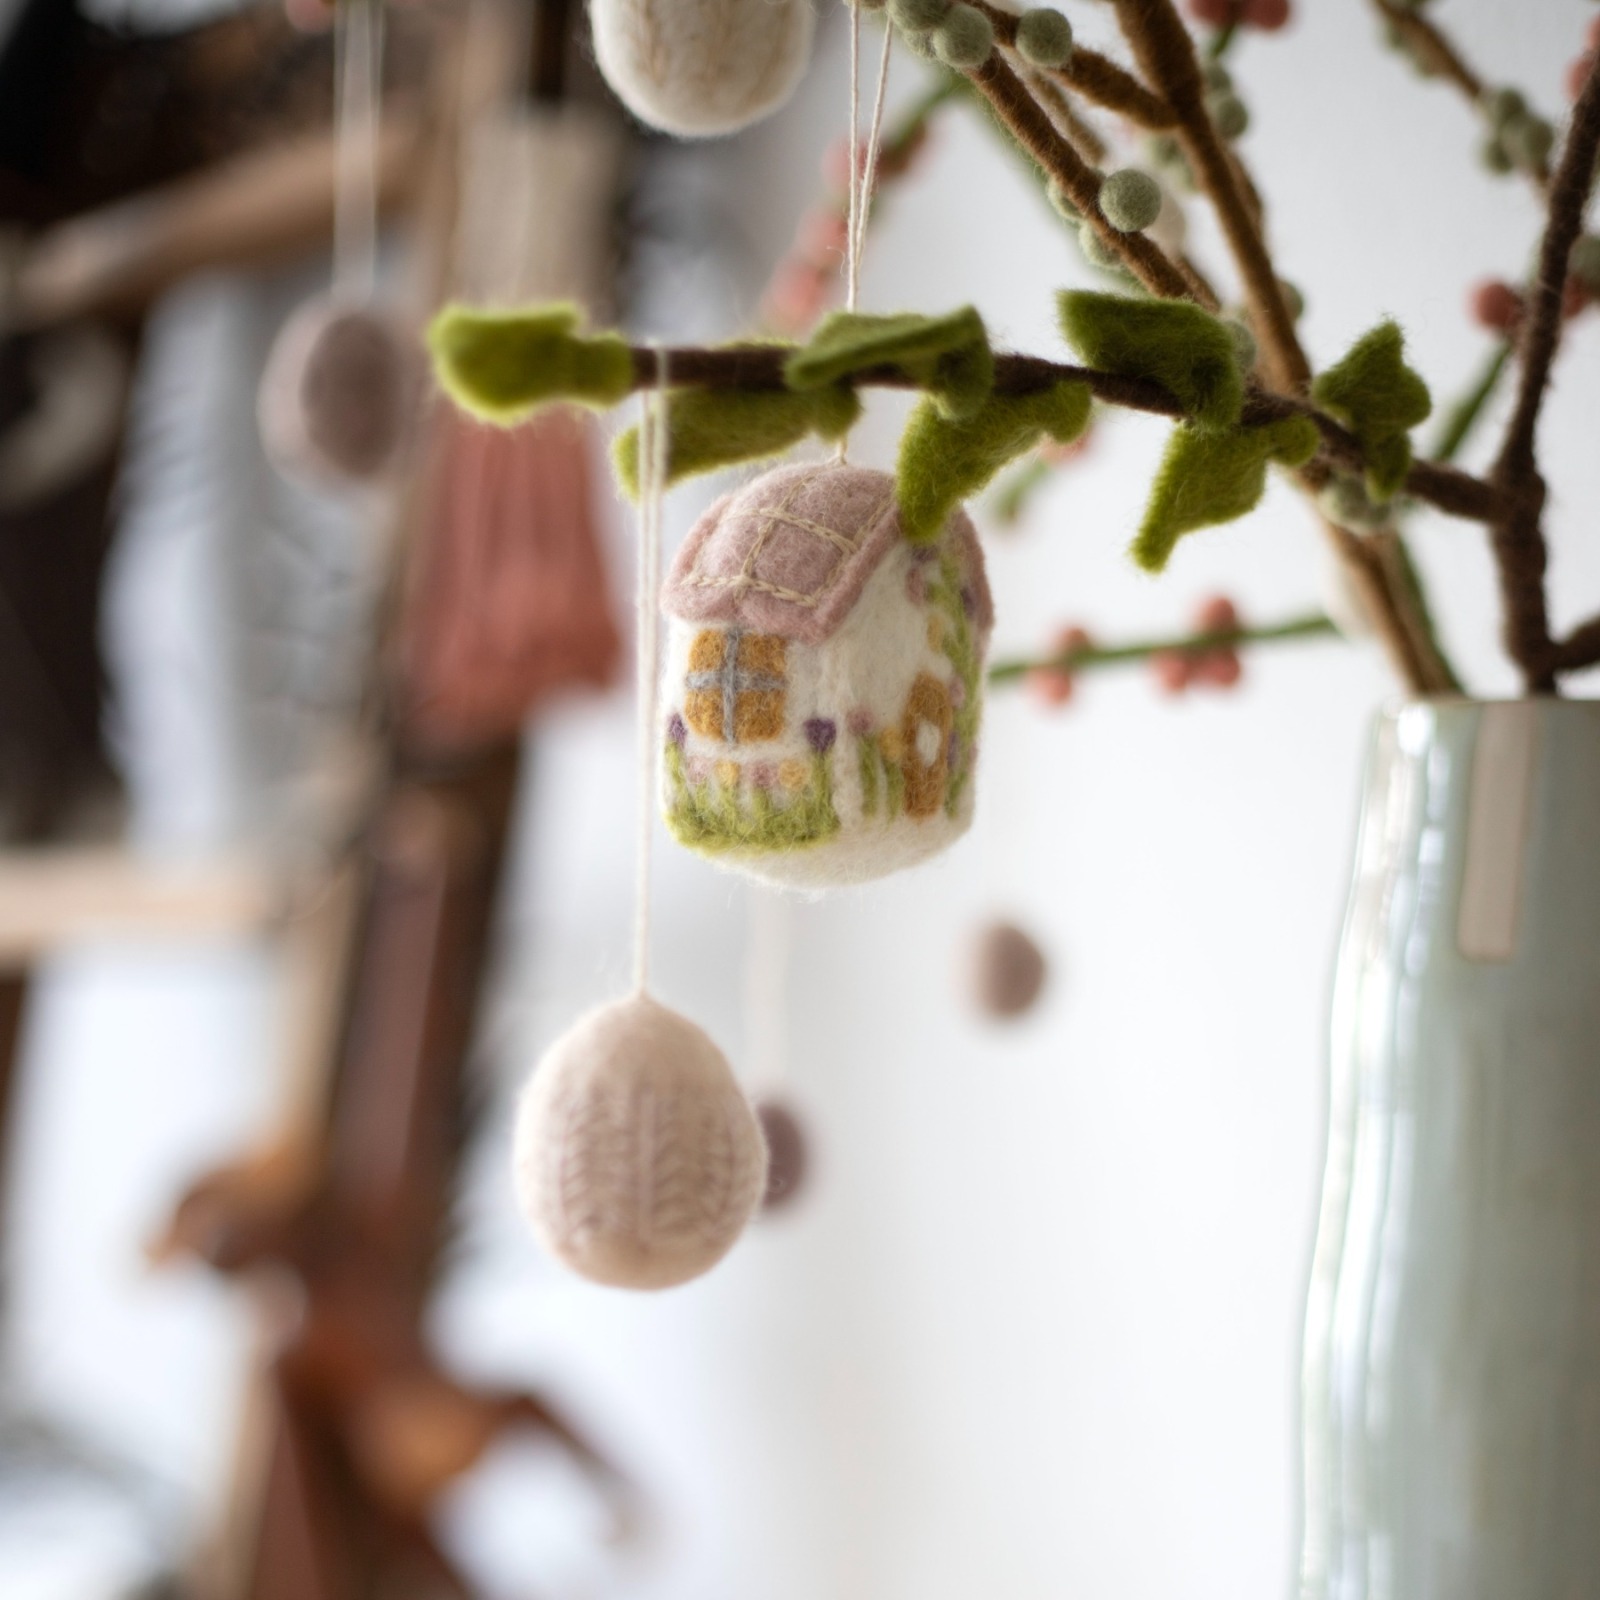 Handgefilztes Mini-Frühlings-Haus: Charmante Dekoration für jede Gelegenheit